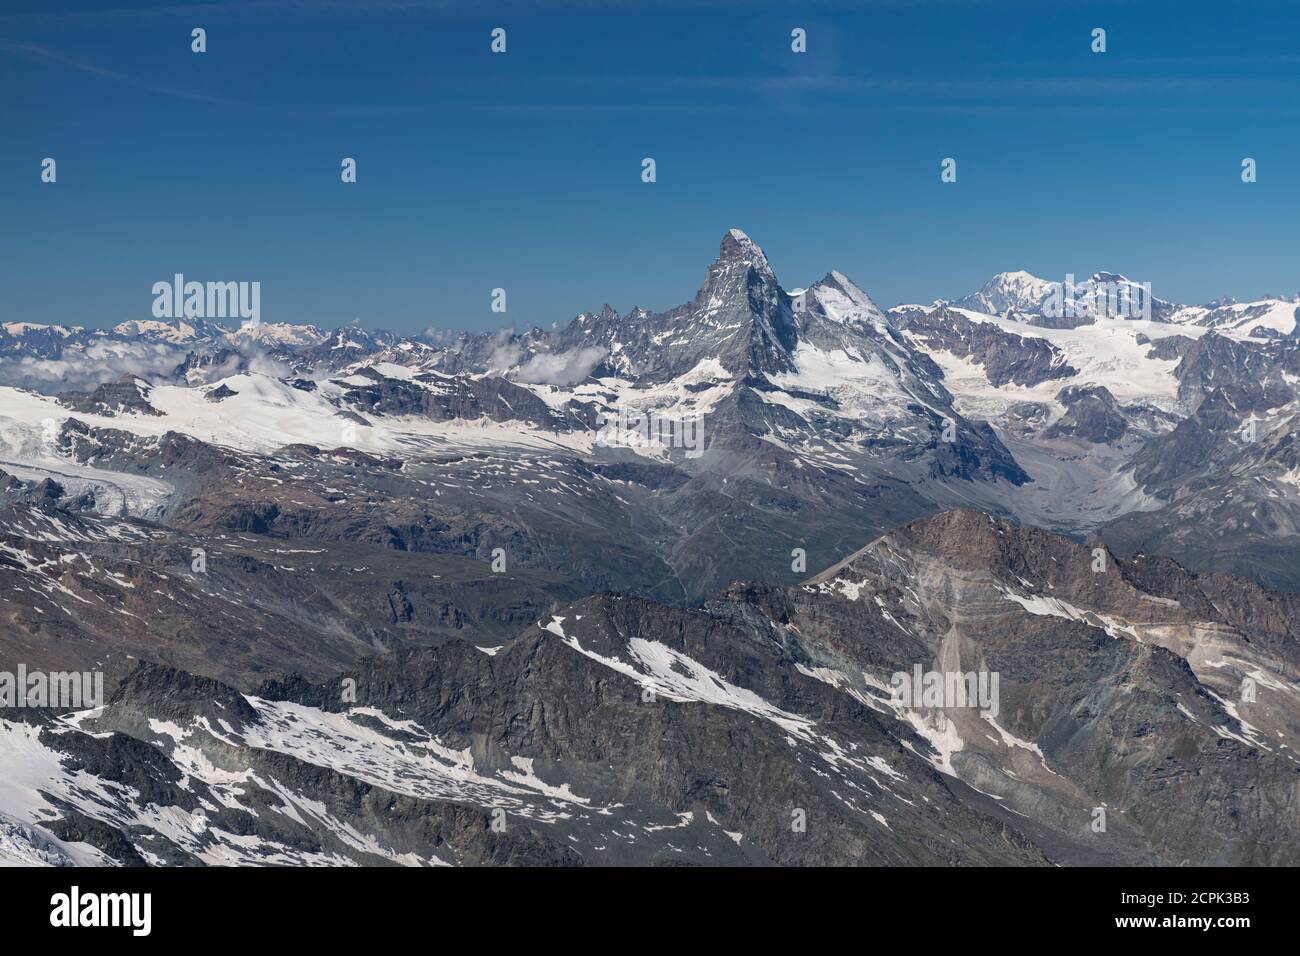 Suisse, Canton Valais, Saastal, Saas-Fee, vue d'Allalinhorn à Matterhorn, Dent d'Herens, Mont blanc, Grand Combin Banque D'Images